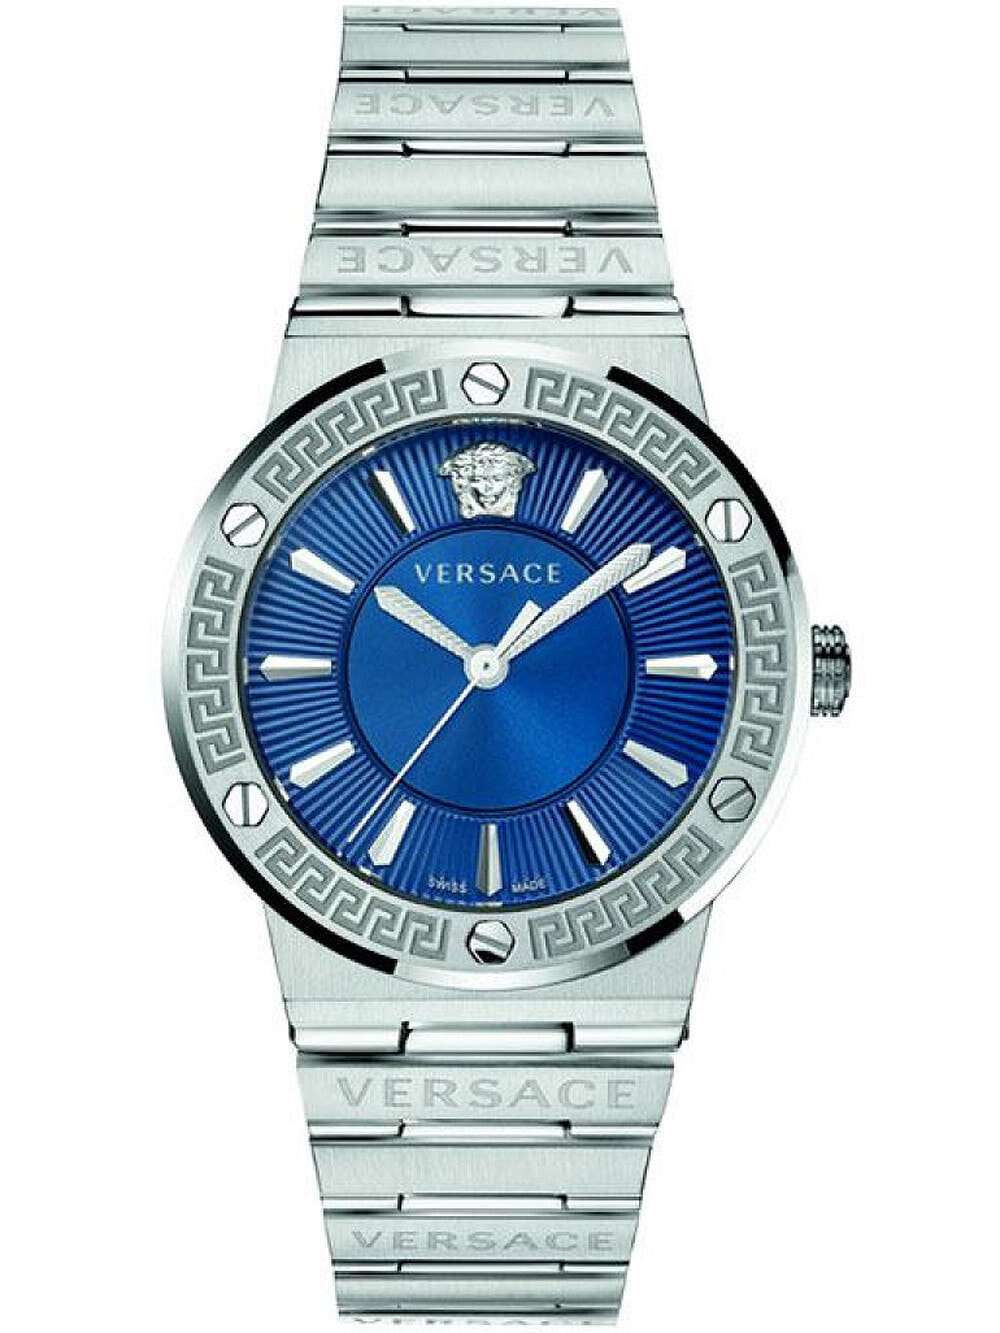 Мужские наручные часы с серебряным браслетом Versace VEVH00520 Greca Logo mens 38mm 5ATM